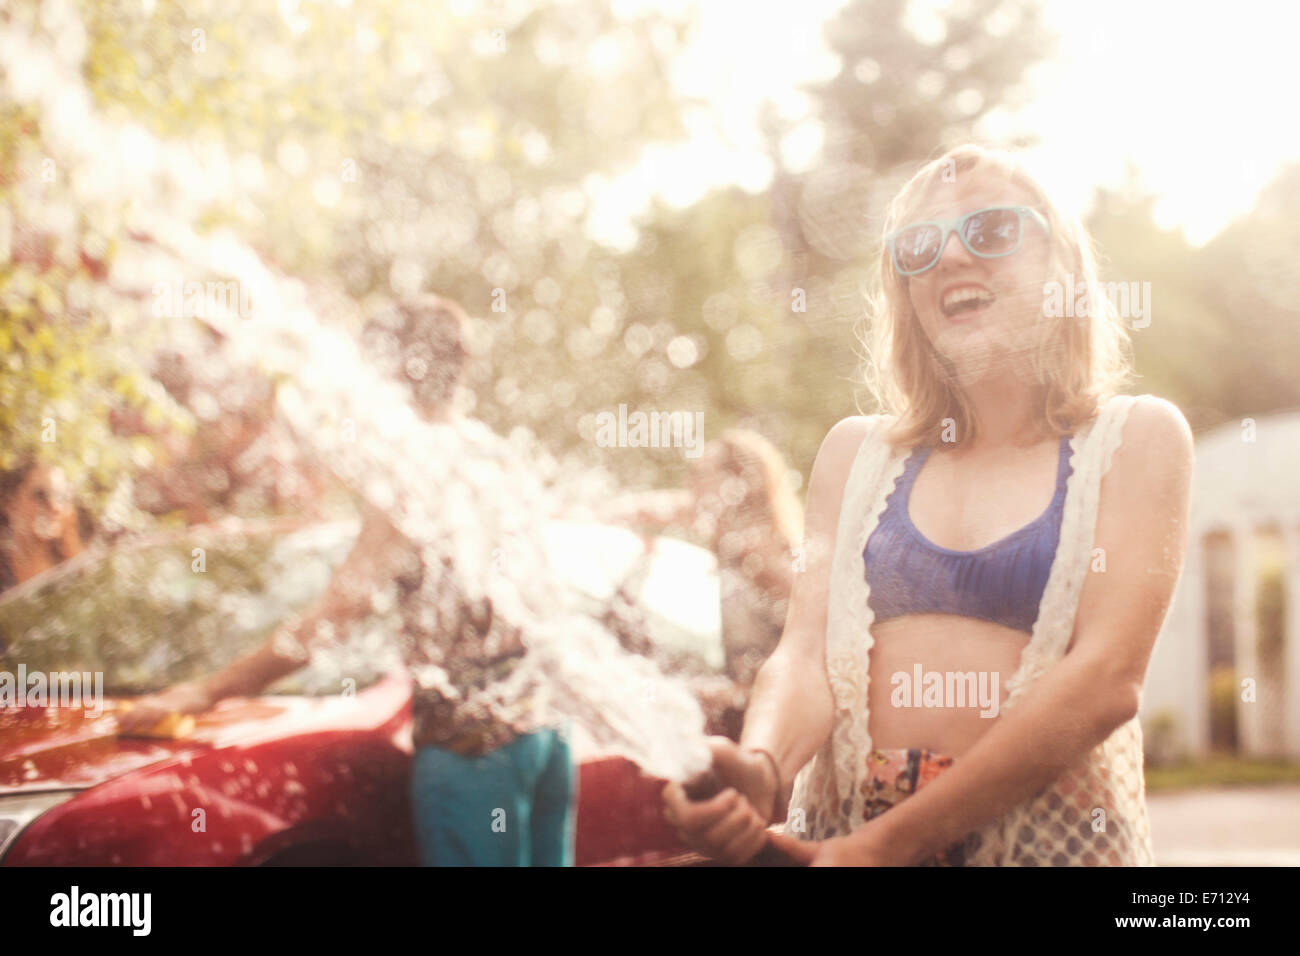 Jeune femme pulvériser de l'eau d'arrosage Banque D'Images